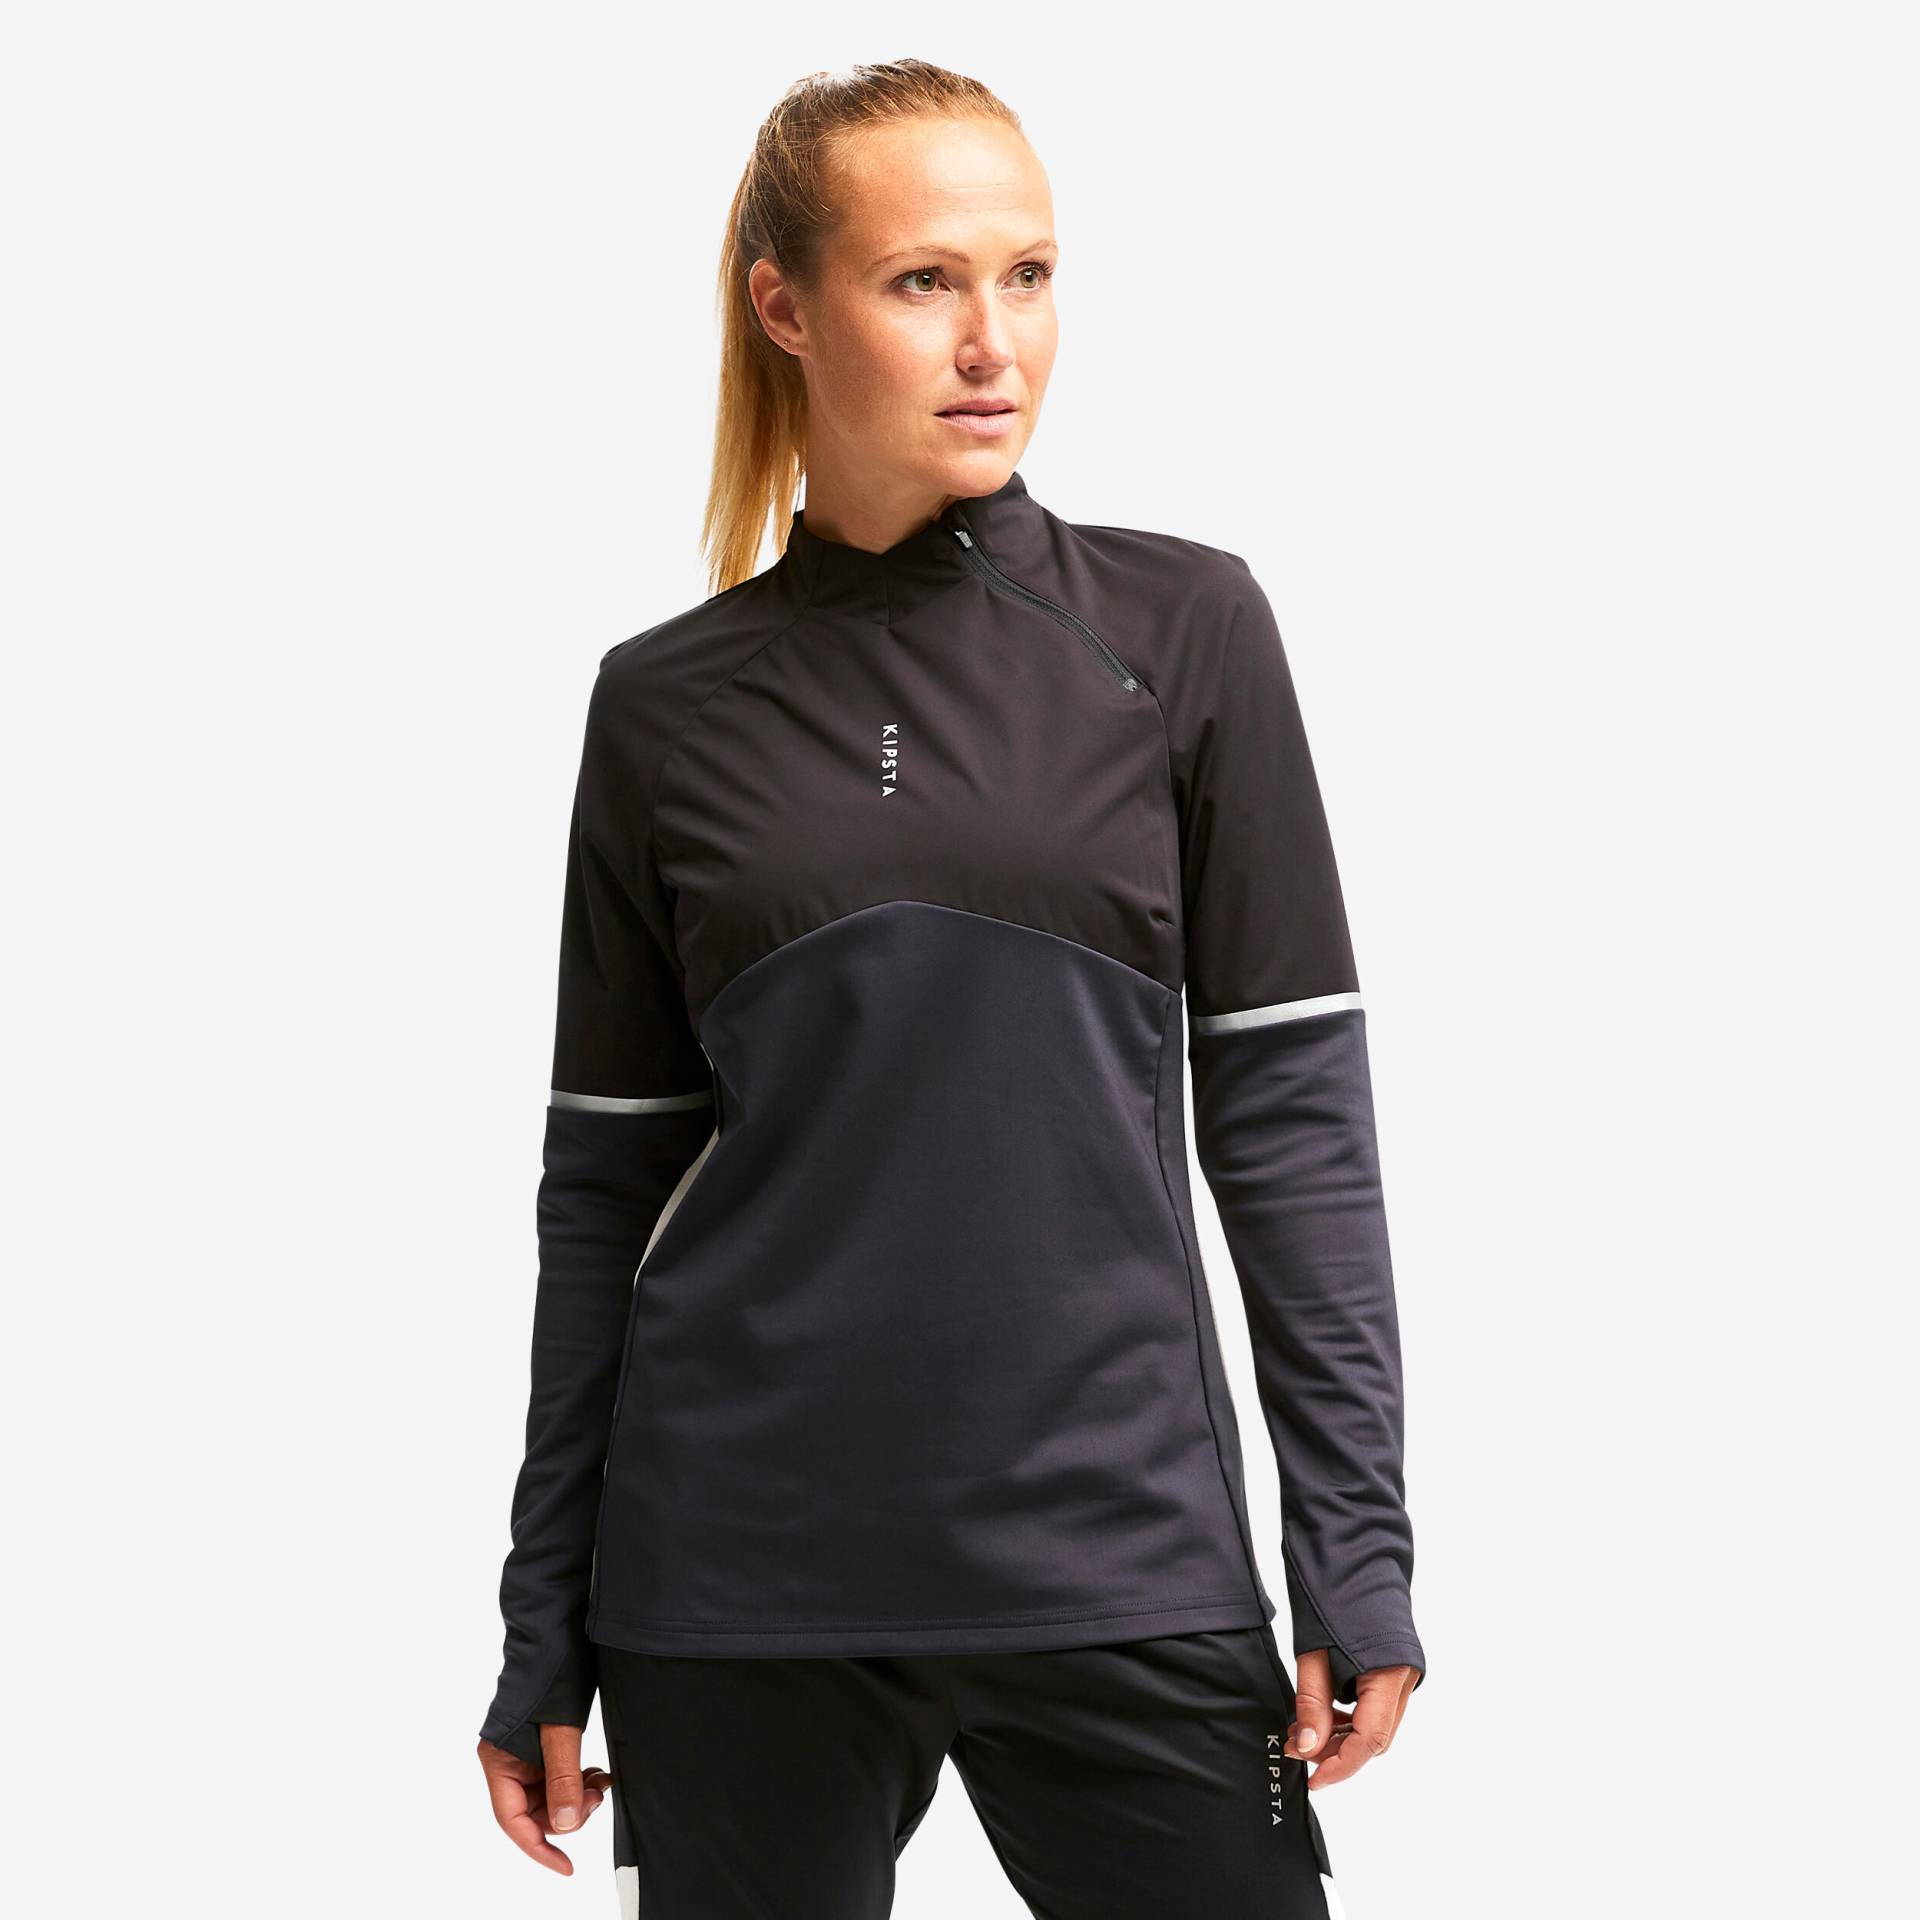 Damen Fussball Sweatshirt - T500 schwarz von KIPSTA